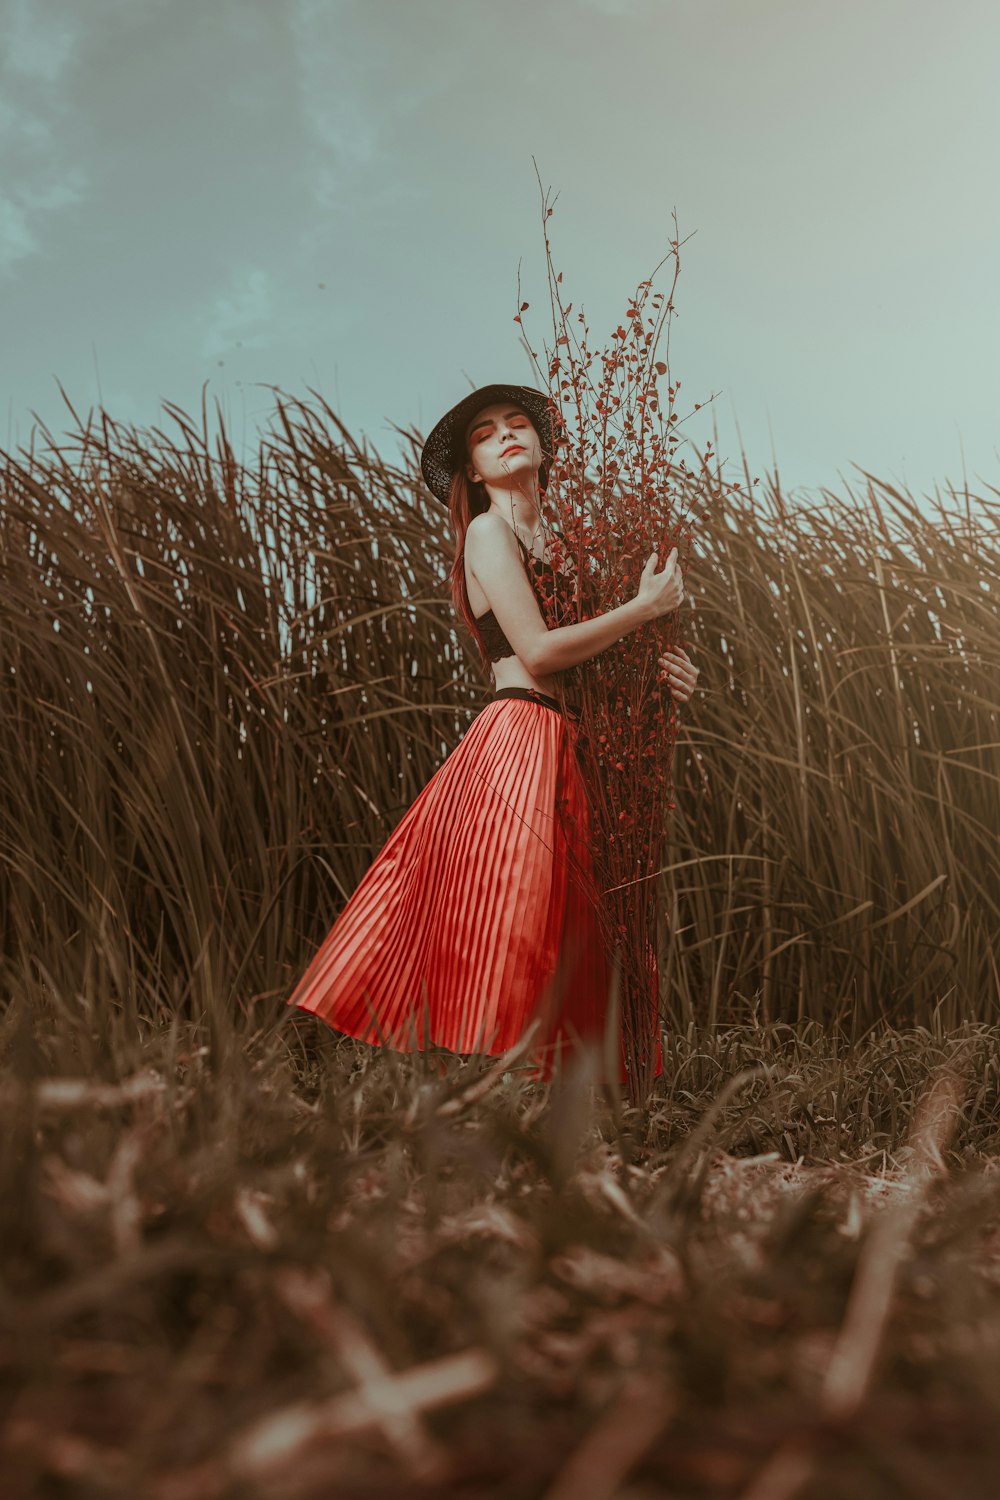 Femme en robe rouge et blanche debout sur le champ d’herbe brune pendant la journée